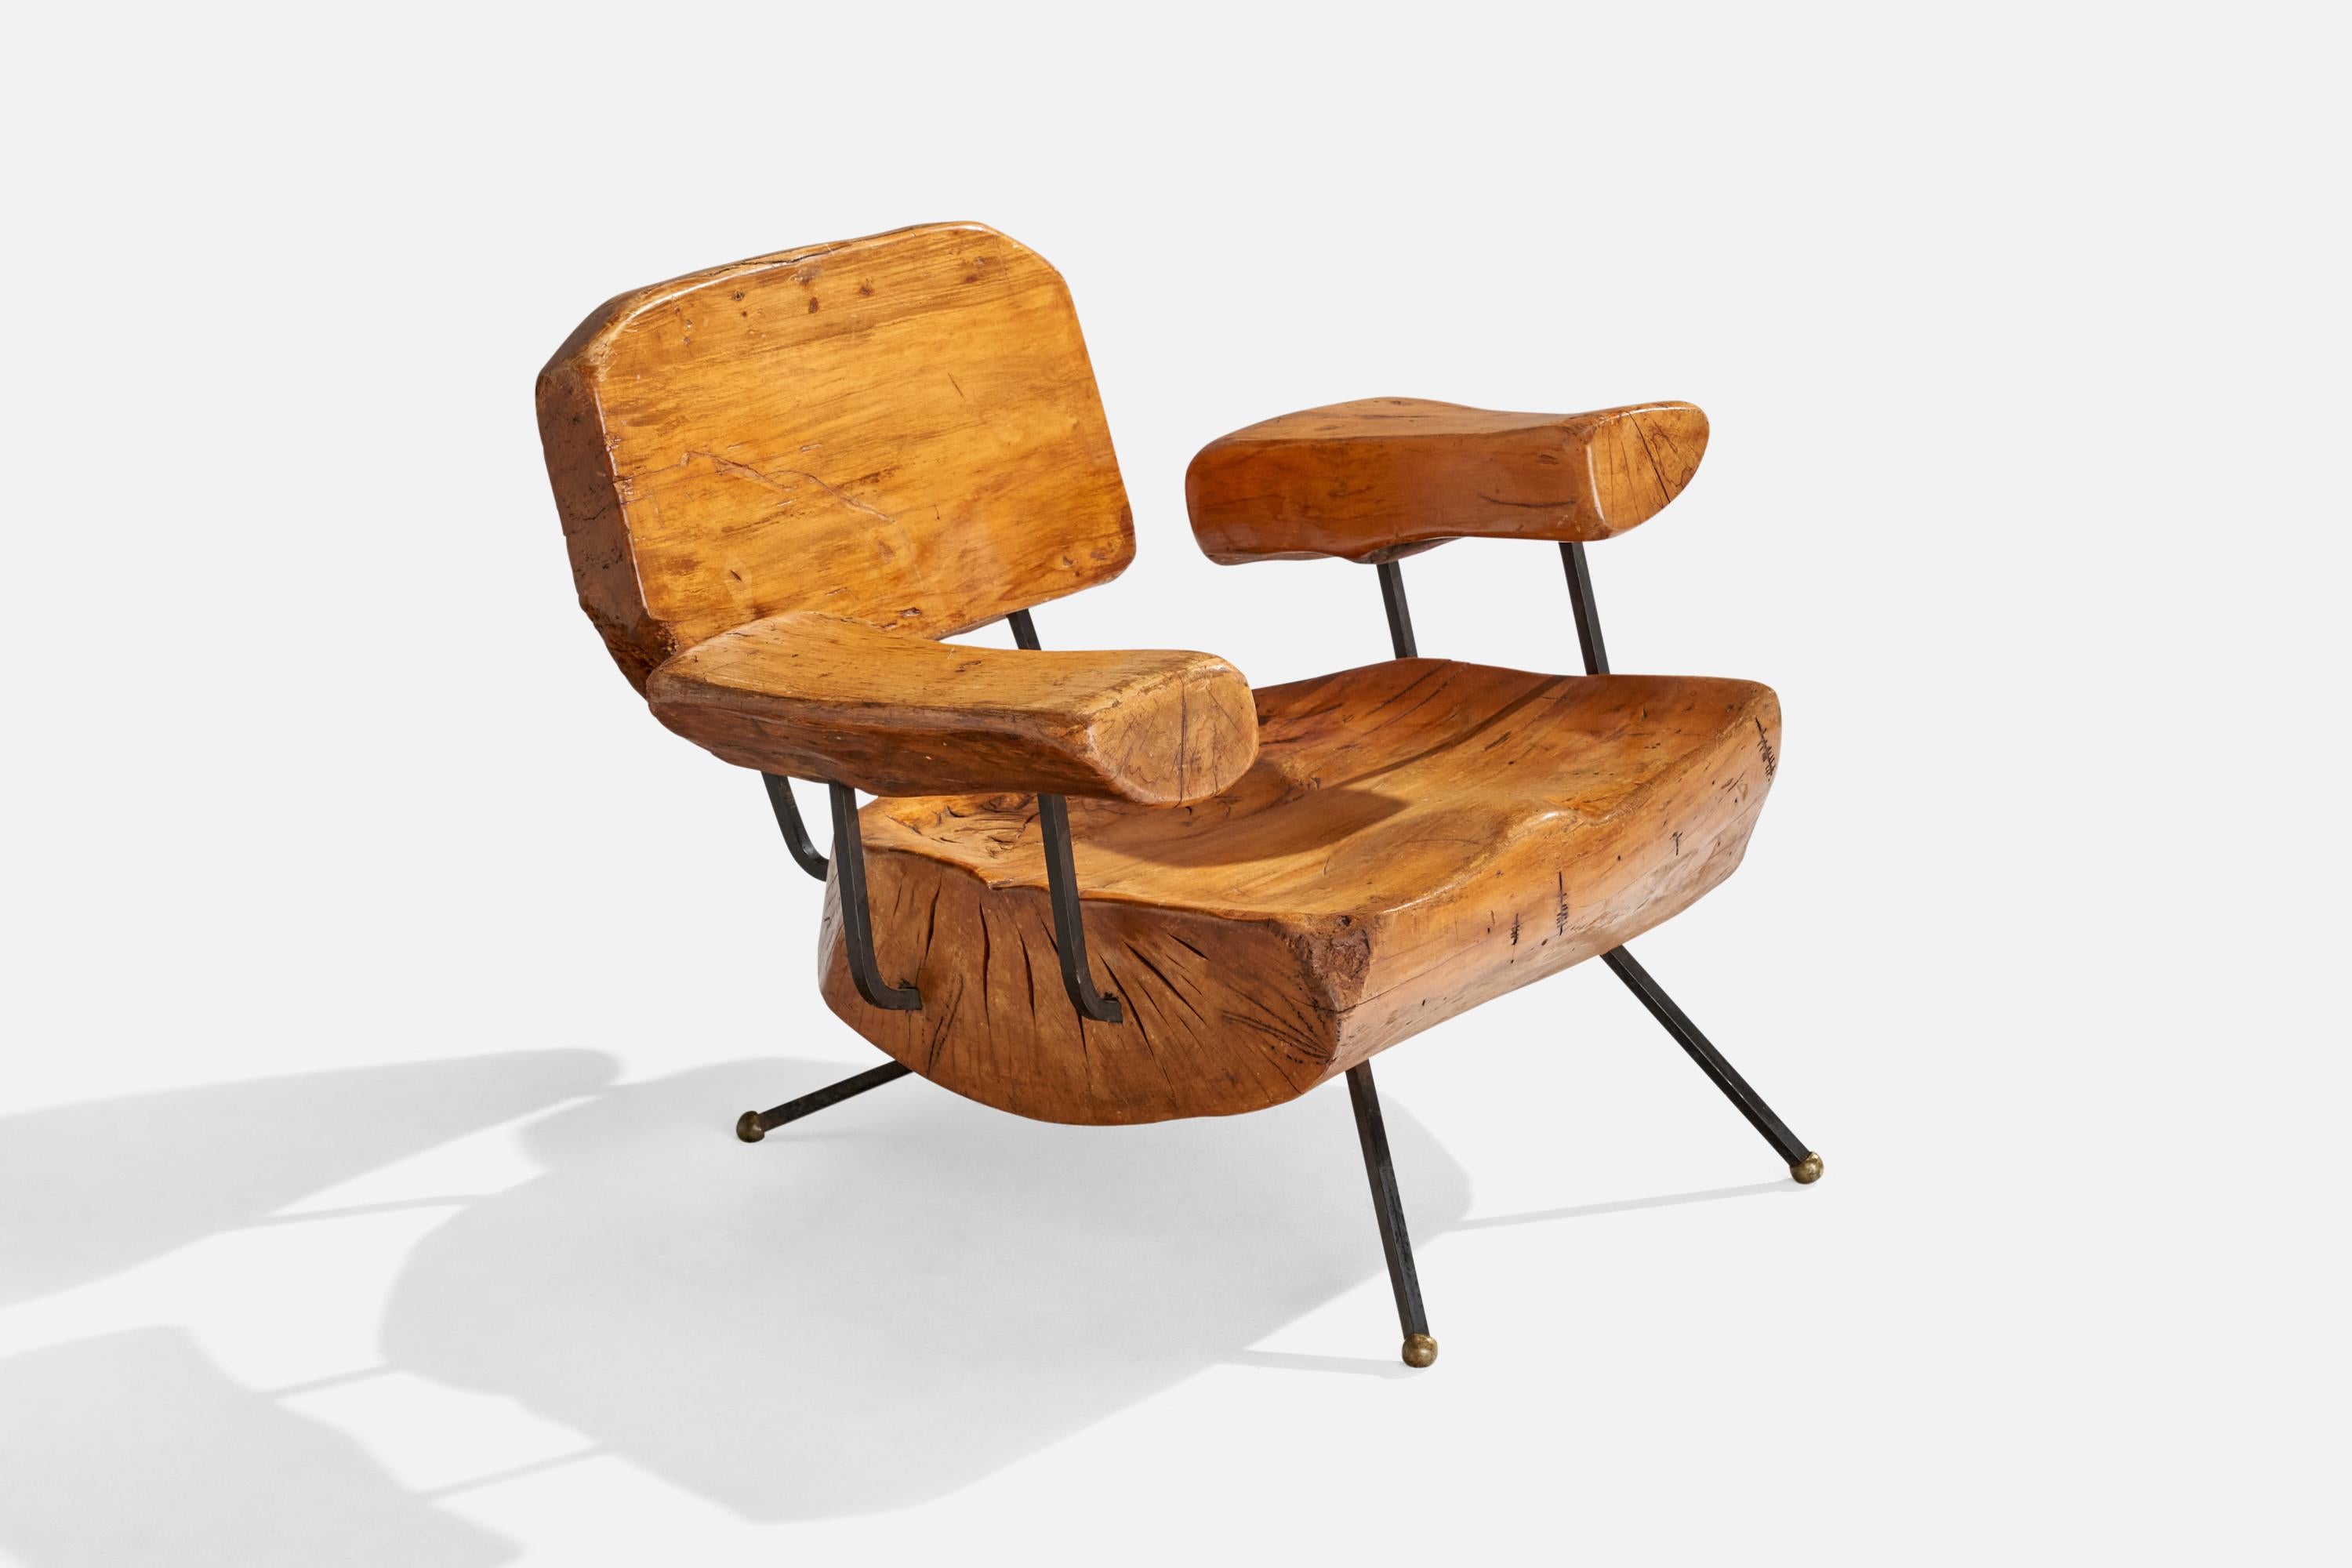 Sessel aus Nussbaumholz, schwarz lackiertem Eisen und Messing, hergestellt von Sabena, Mexiko, 1950er Jahre.

Sitzhöhe: 12,25